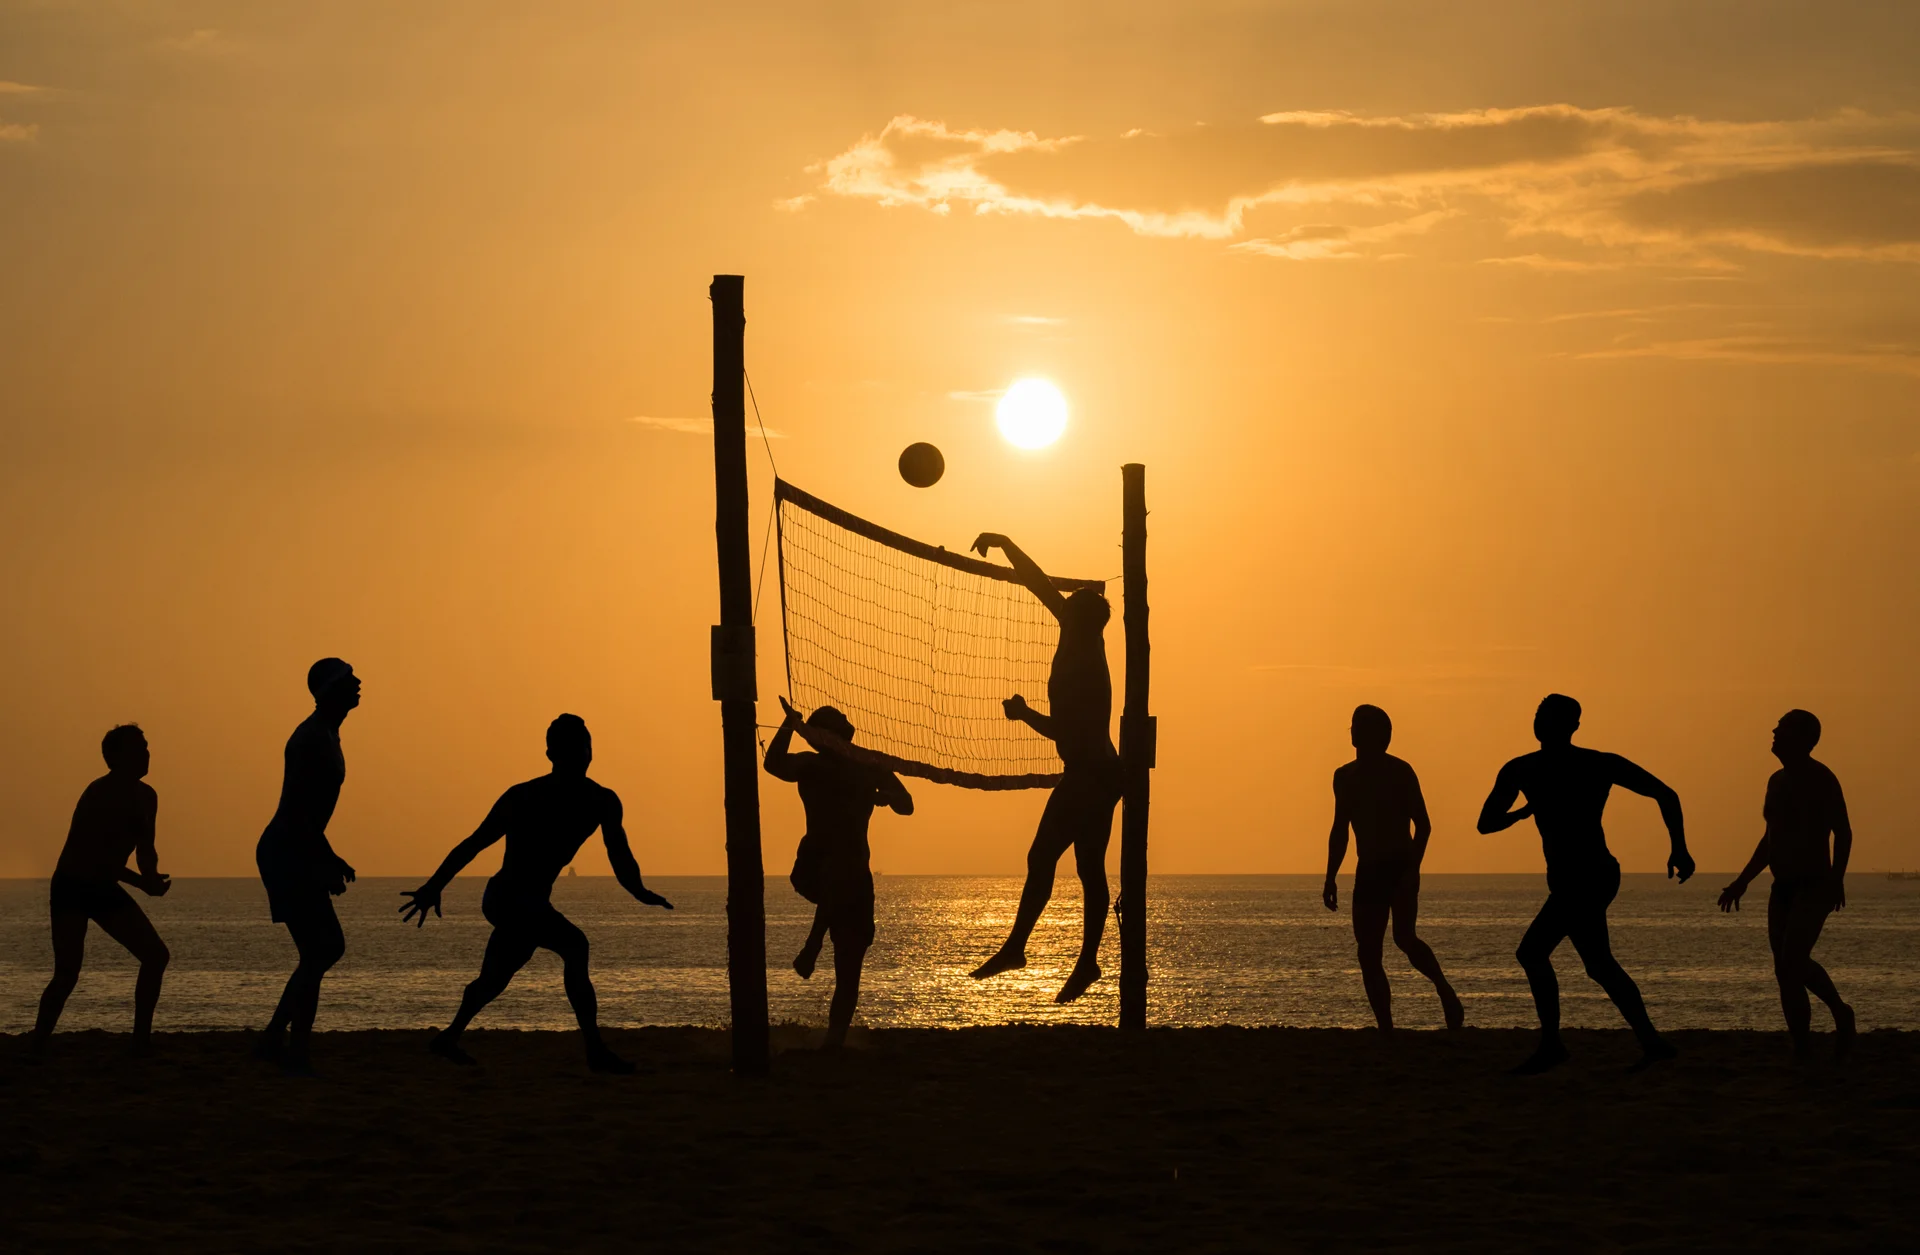 Pratica de esportes nas praias vira pauta de debate. Foto: reprodução